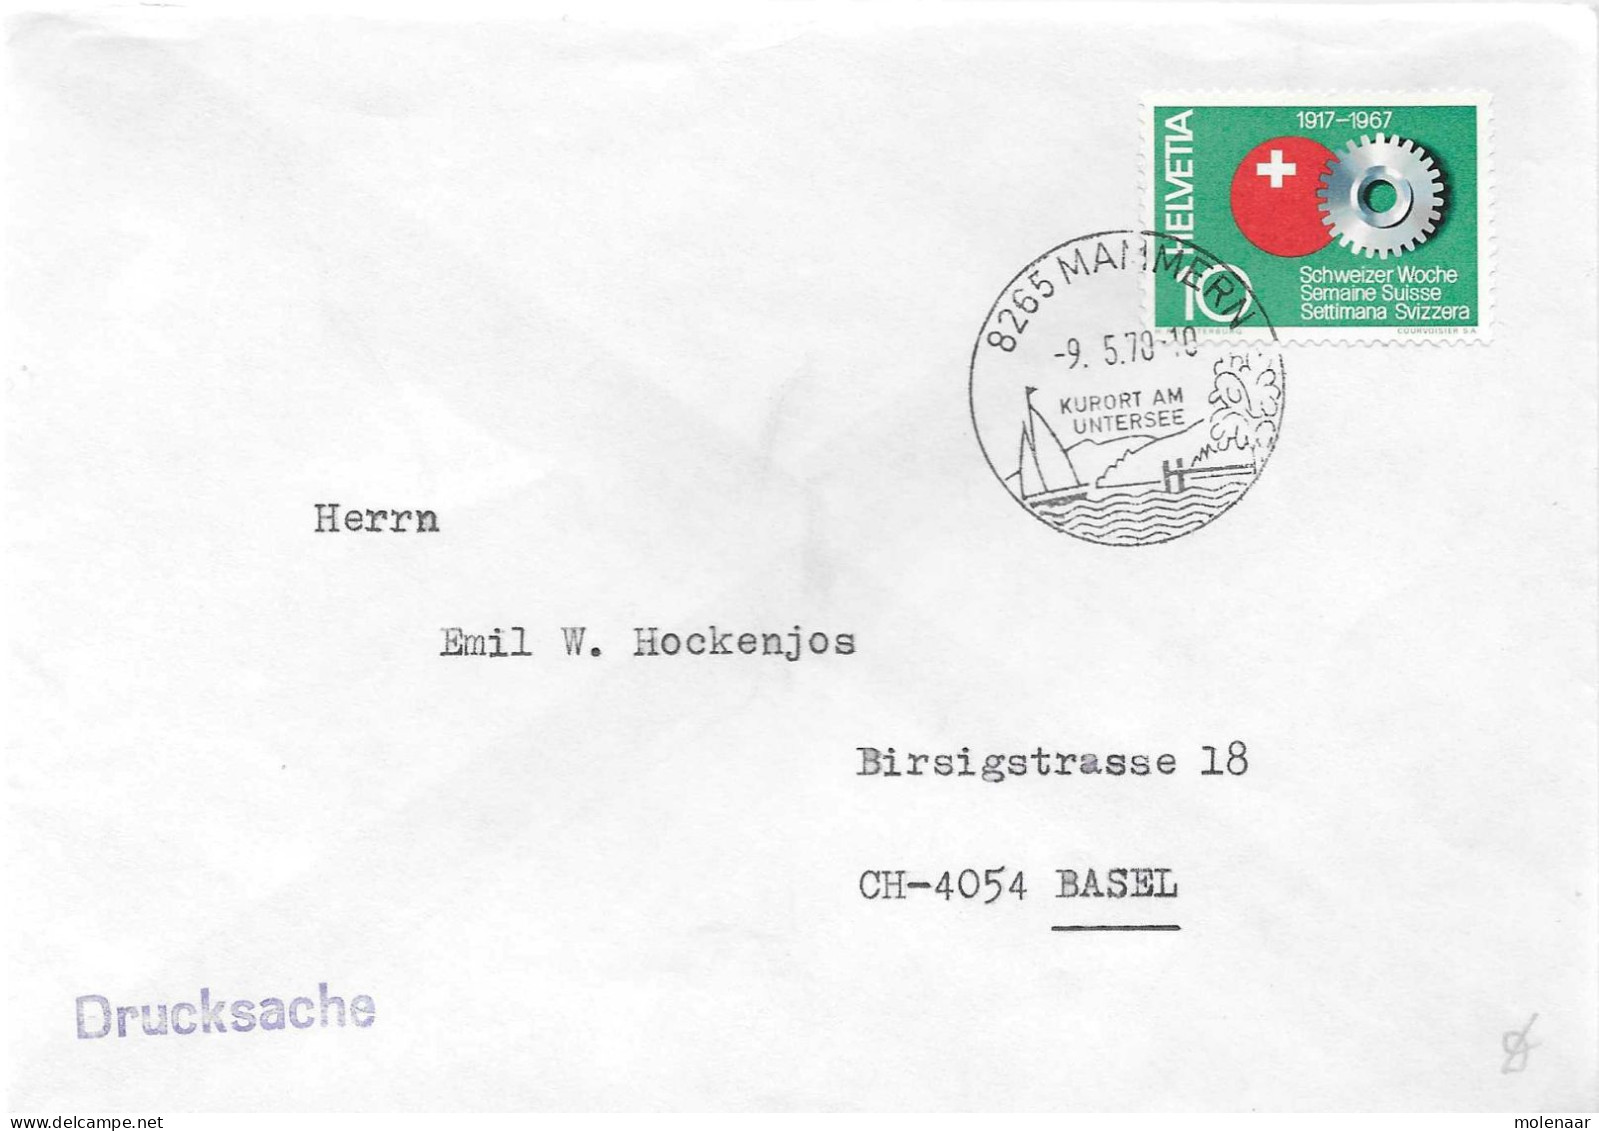 Postzegels > Europa > Zwitserland > 1970-1979 > Brief  Uit 1970  Met 1 Postzegel  (17656) - Covers & Documents